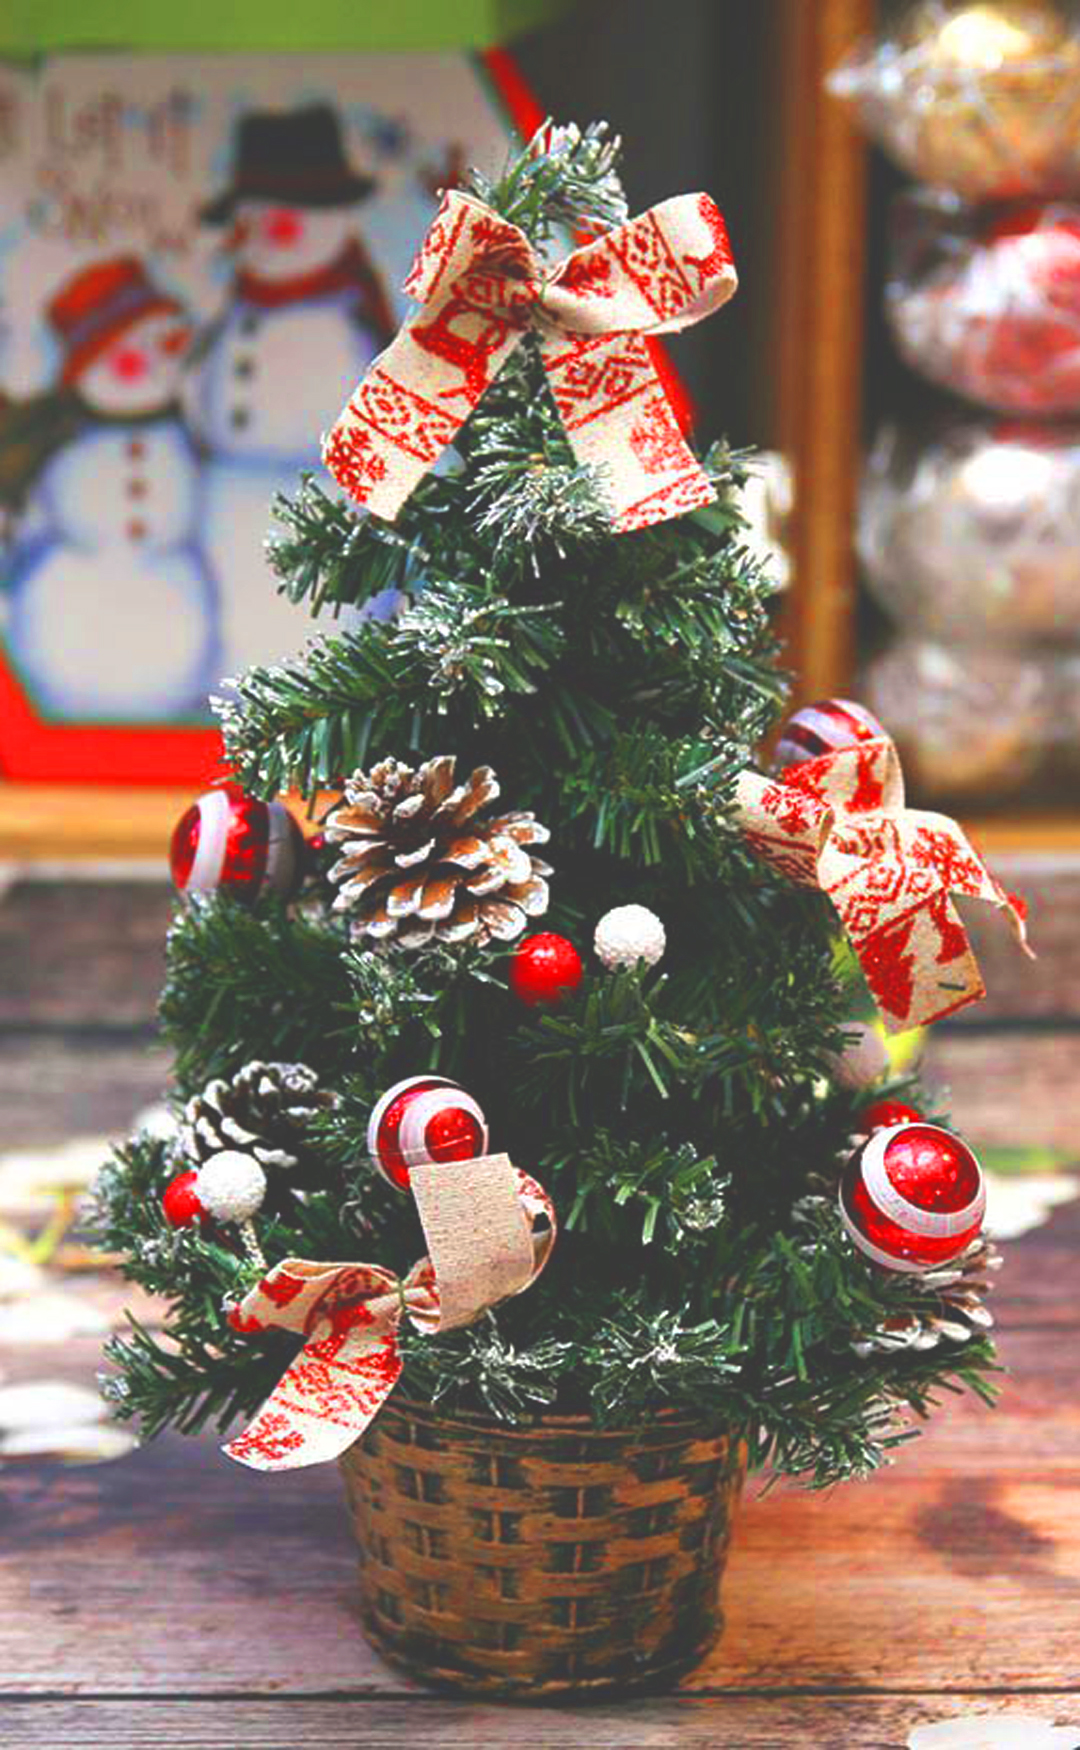 Hình ảnh cây thông Noel: Hãy cùng chào đón mùa Giáng Sinh đầy ấm áp với những hình ảnh về cây thông Noel lung linh. Nét vẽ lạ mắt và sắc màu tươi sáng đang chờ đợi bạn khám phá. Từ những chi tiết nhỏ nhất đến cả không gian chung quanh đều được tìm tòi một cách đầy tinh tế. Cảm nhận được sự ấm áp và mộc mạc của mùa Giáng Sinh với bộ sưu tập này.